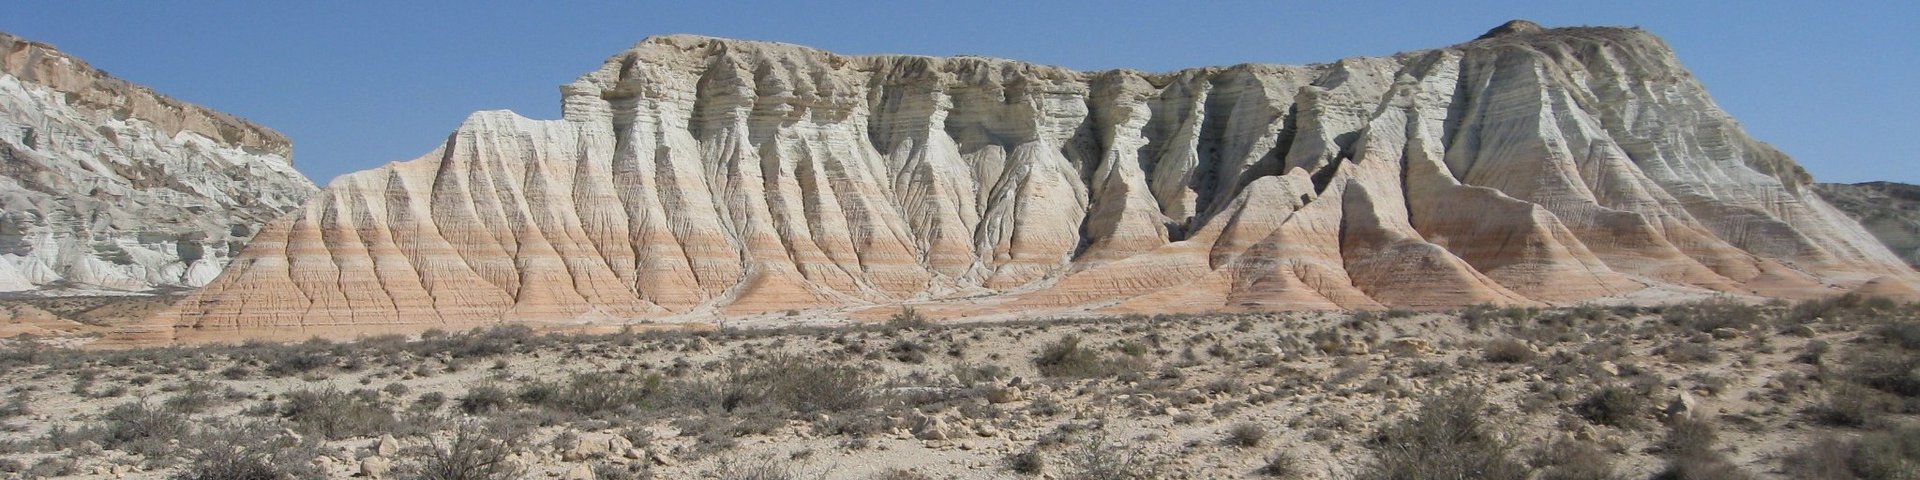 Gesteinsformationen in der Wüste von Turkmenistan